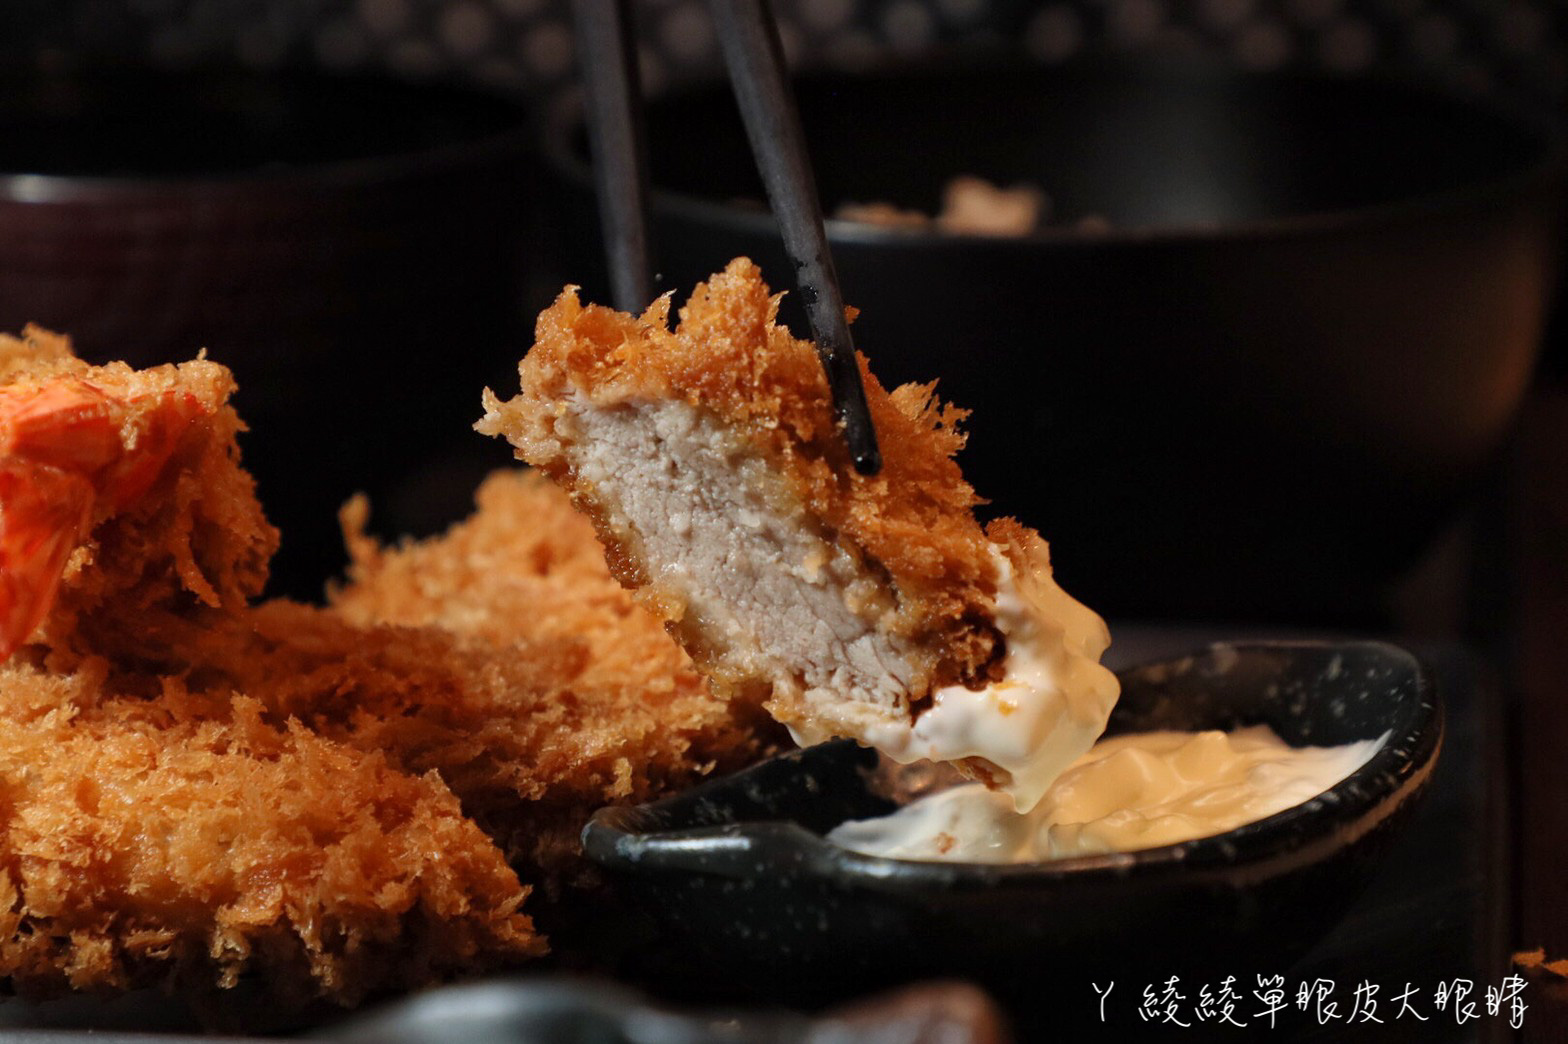 新竹火車站附近美食！主打厚實的日式炸豬排定食，必吃期間限定肥美多汁的廣島牡蠣